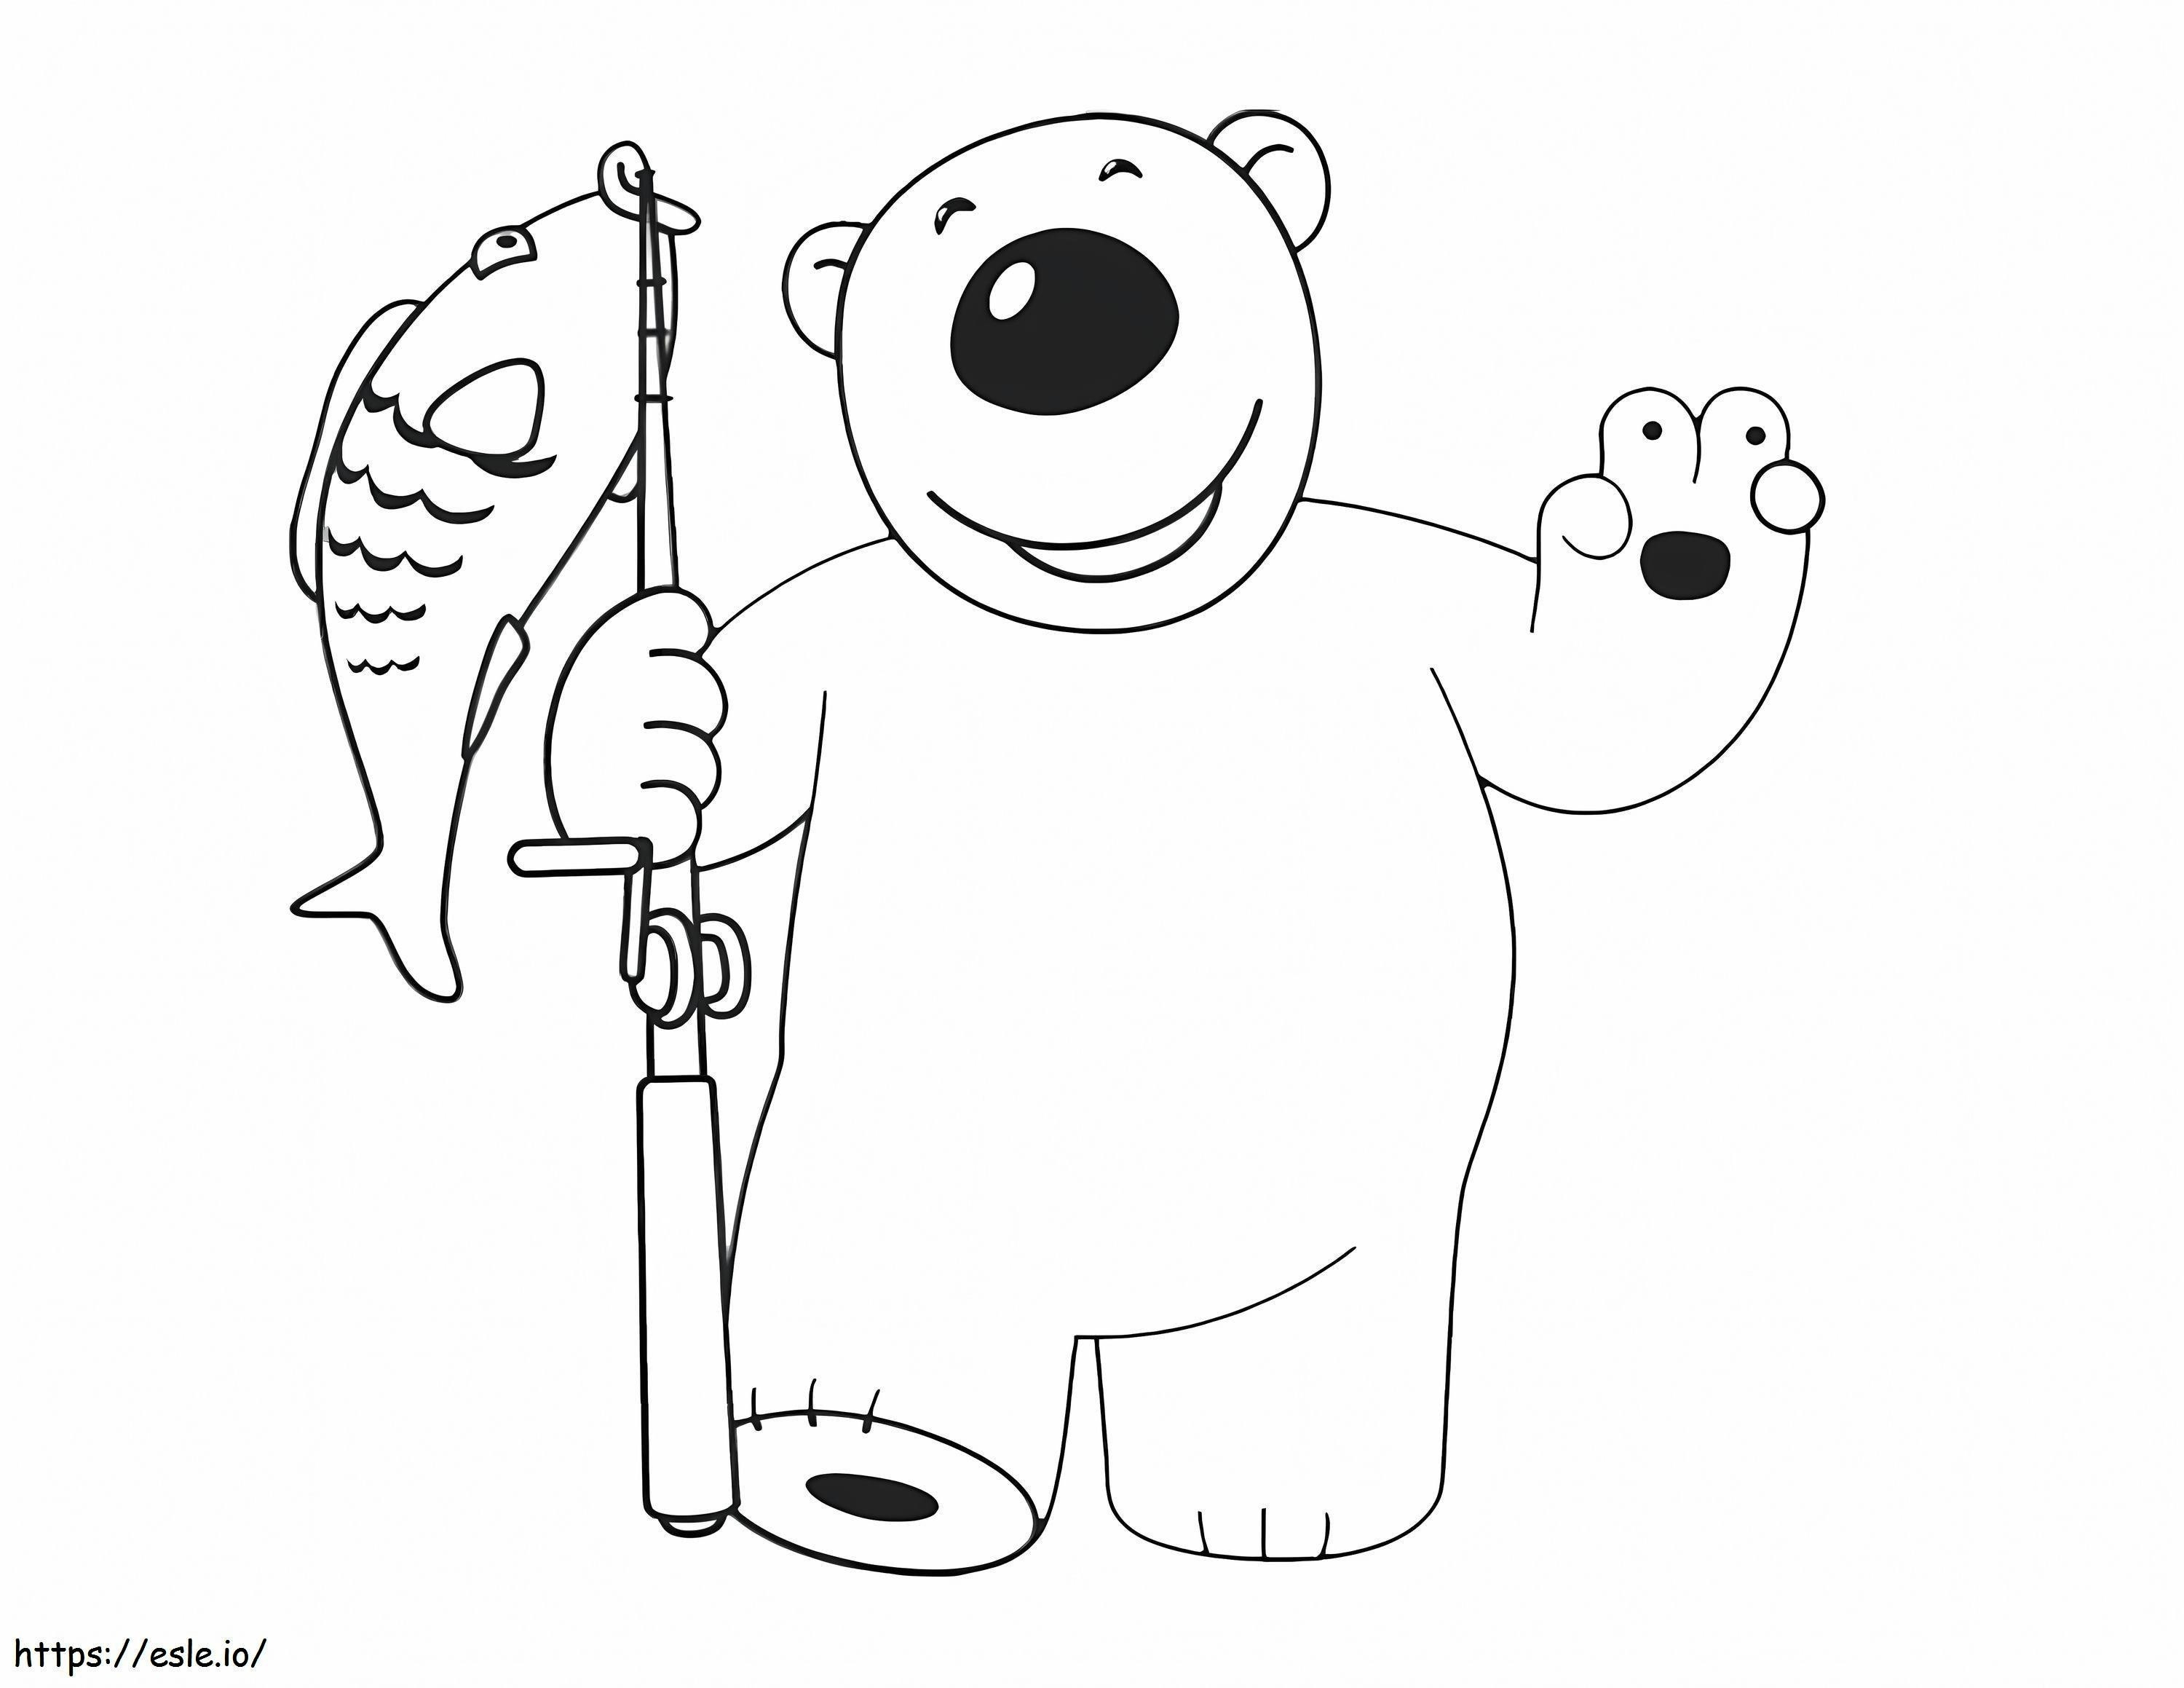 Poby Pesca all'orso da colorare